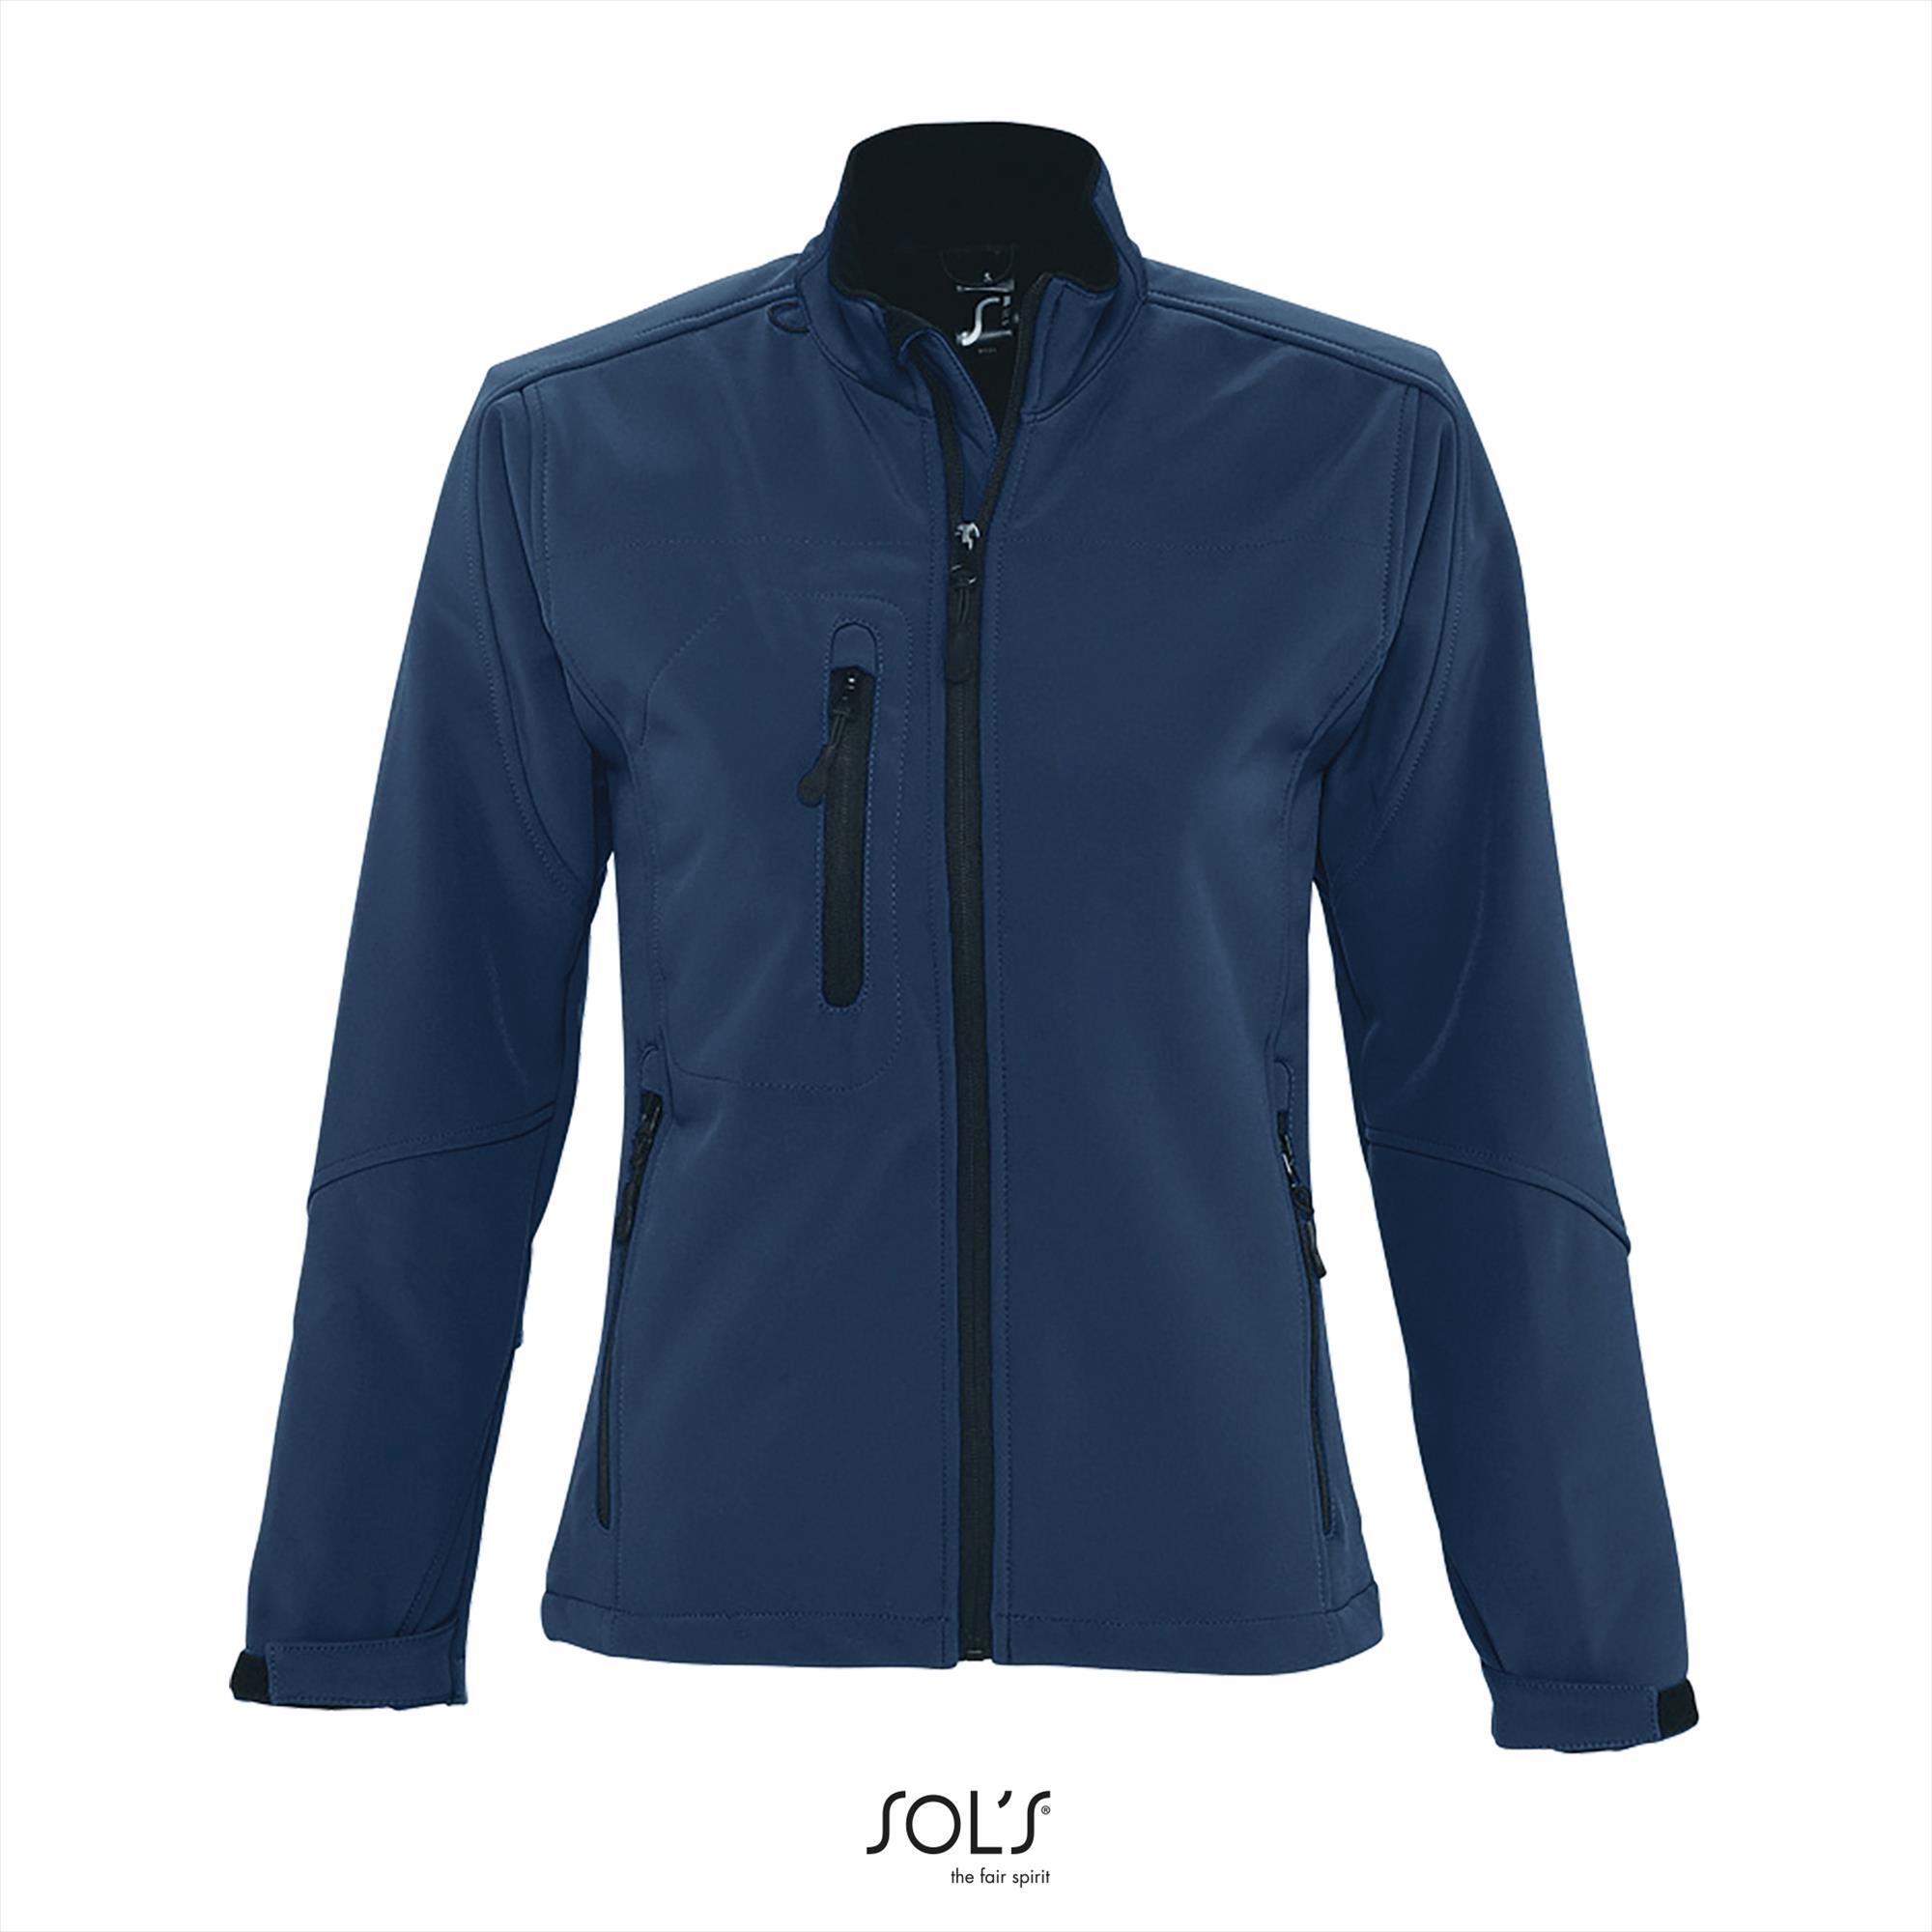 Sportieve dames softshell jacket donkerblauw met een borstzakje.